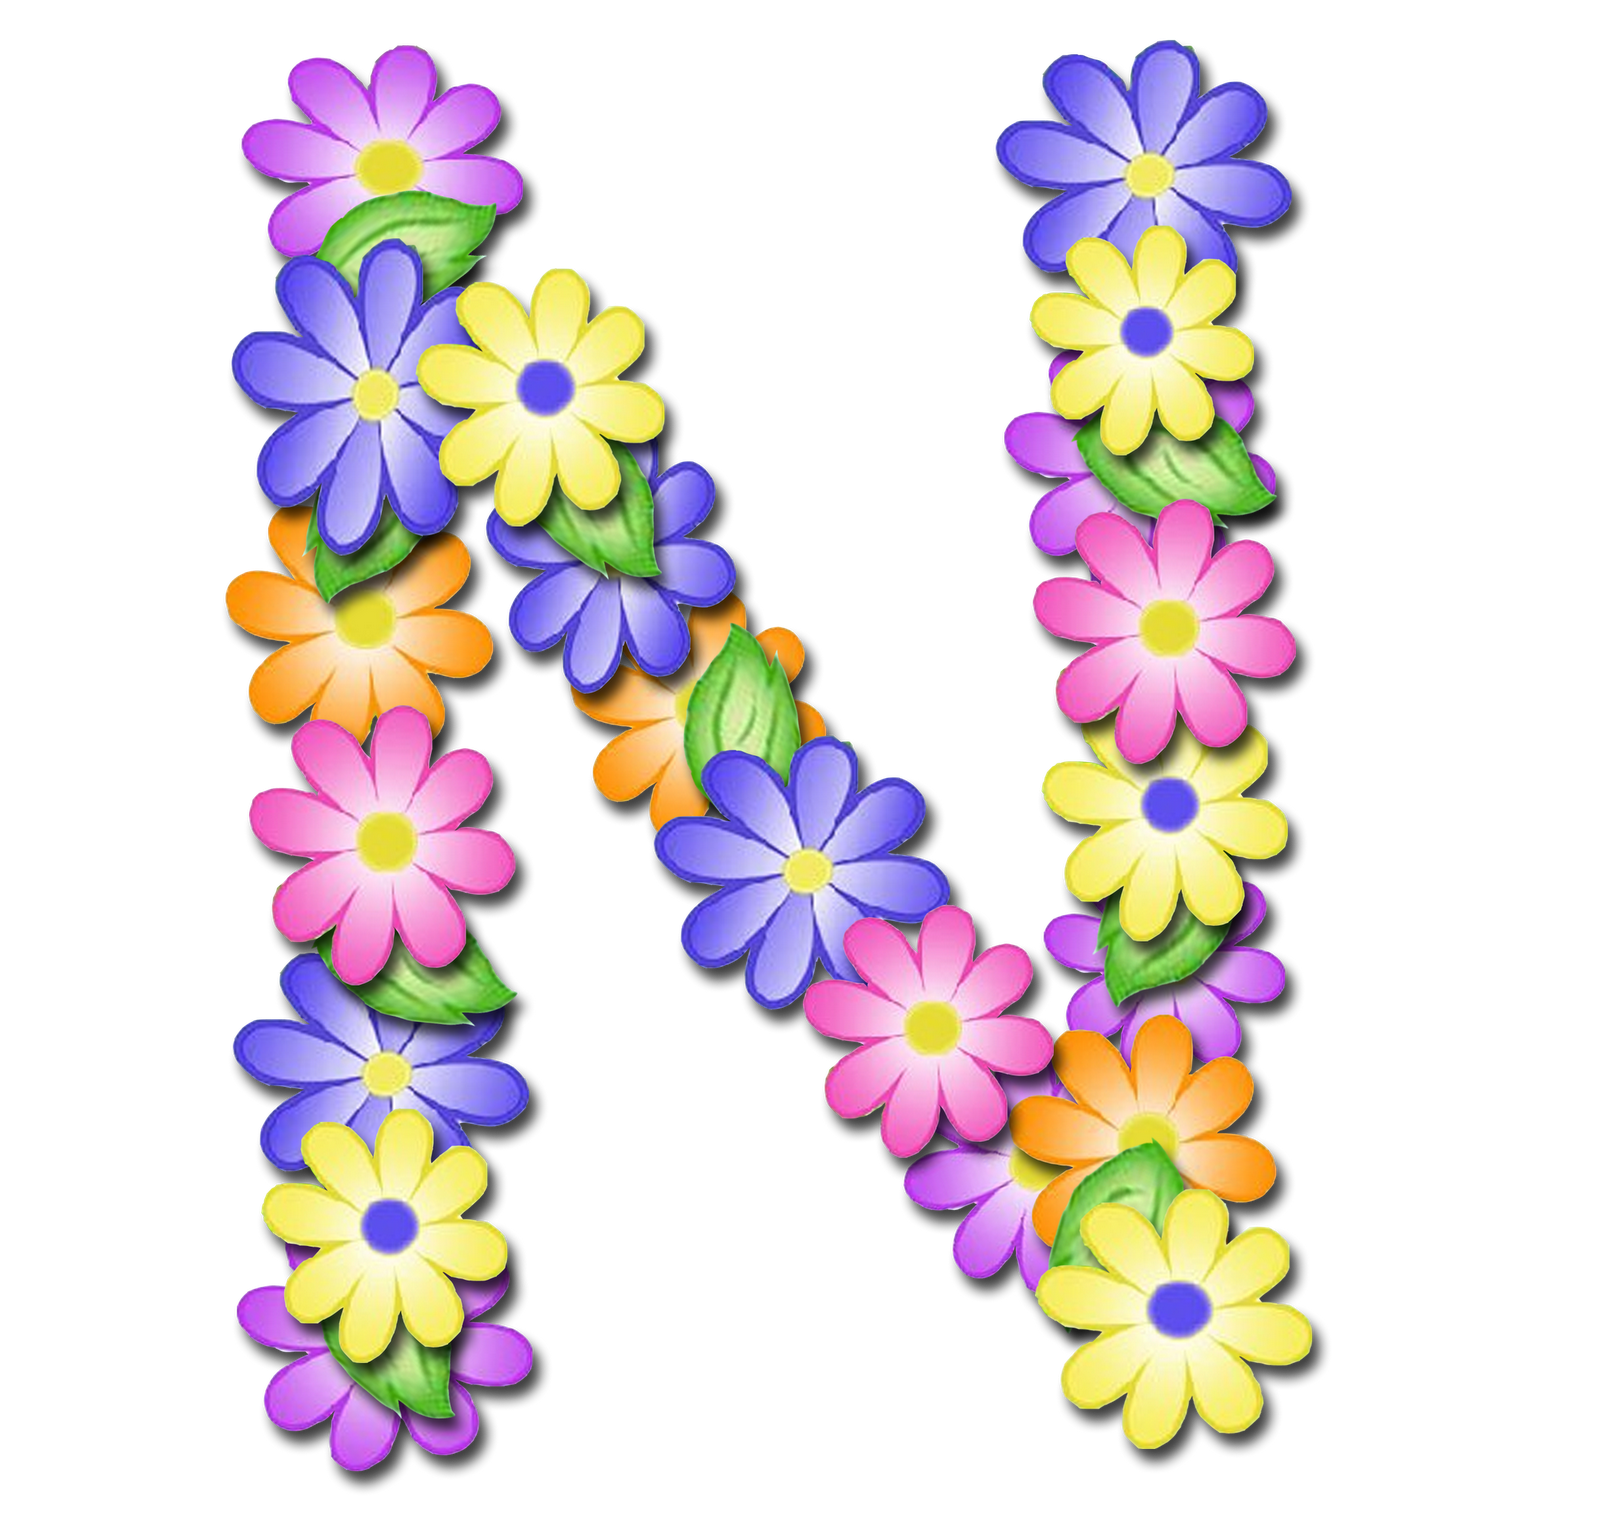 صور الحروف الإنجليزية بأجمل الزهور والورود بخلفية شفافة بنج png وجودة عالية للمصممين :: إبحث عن حروف إسمك بالإنجليزية - صفحة 2 P_1699iv1pb1